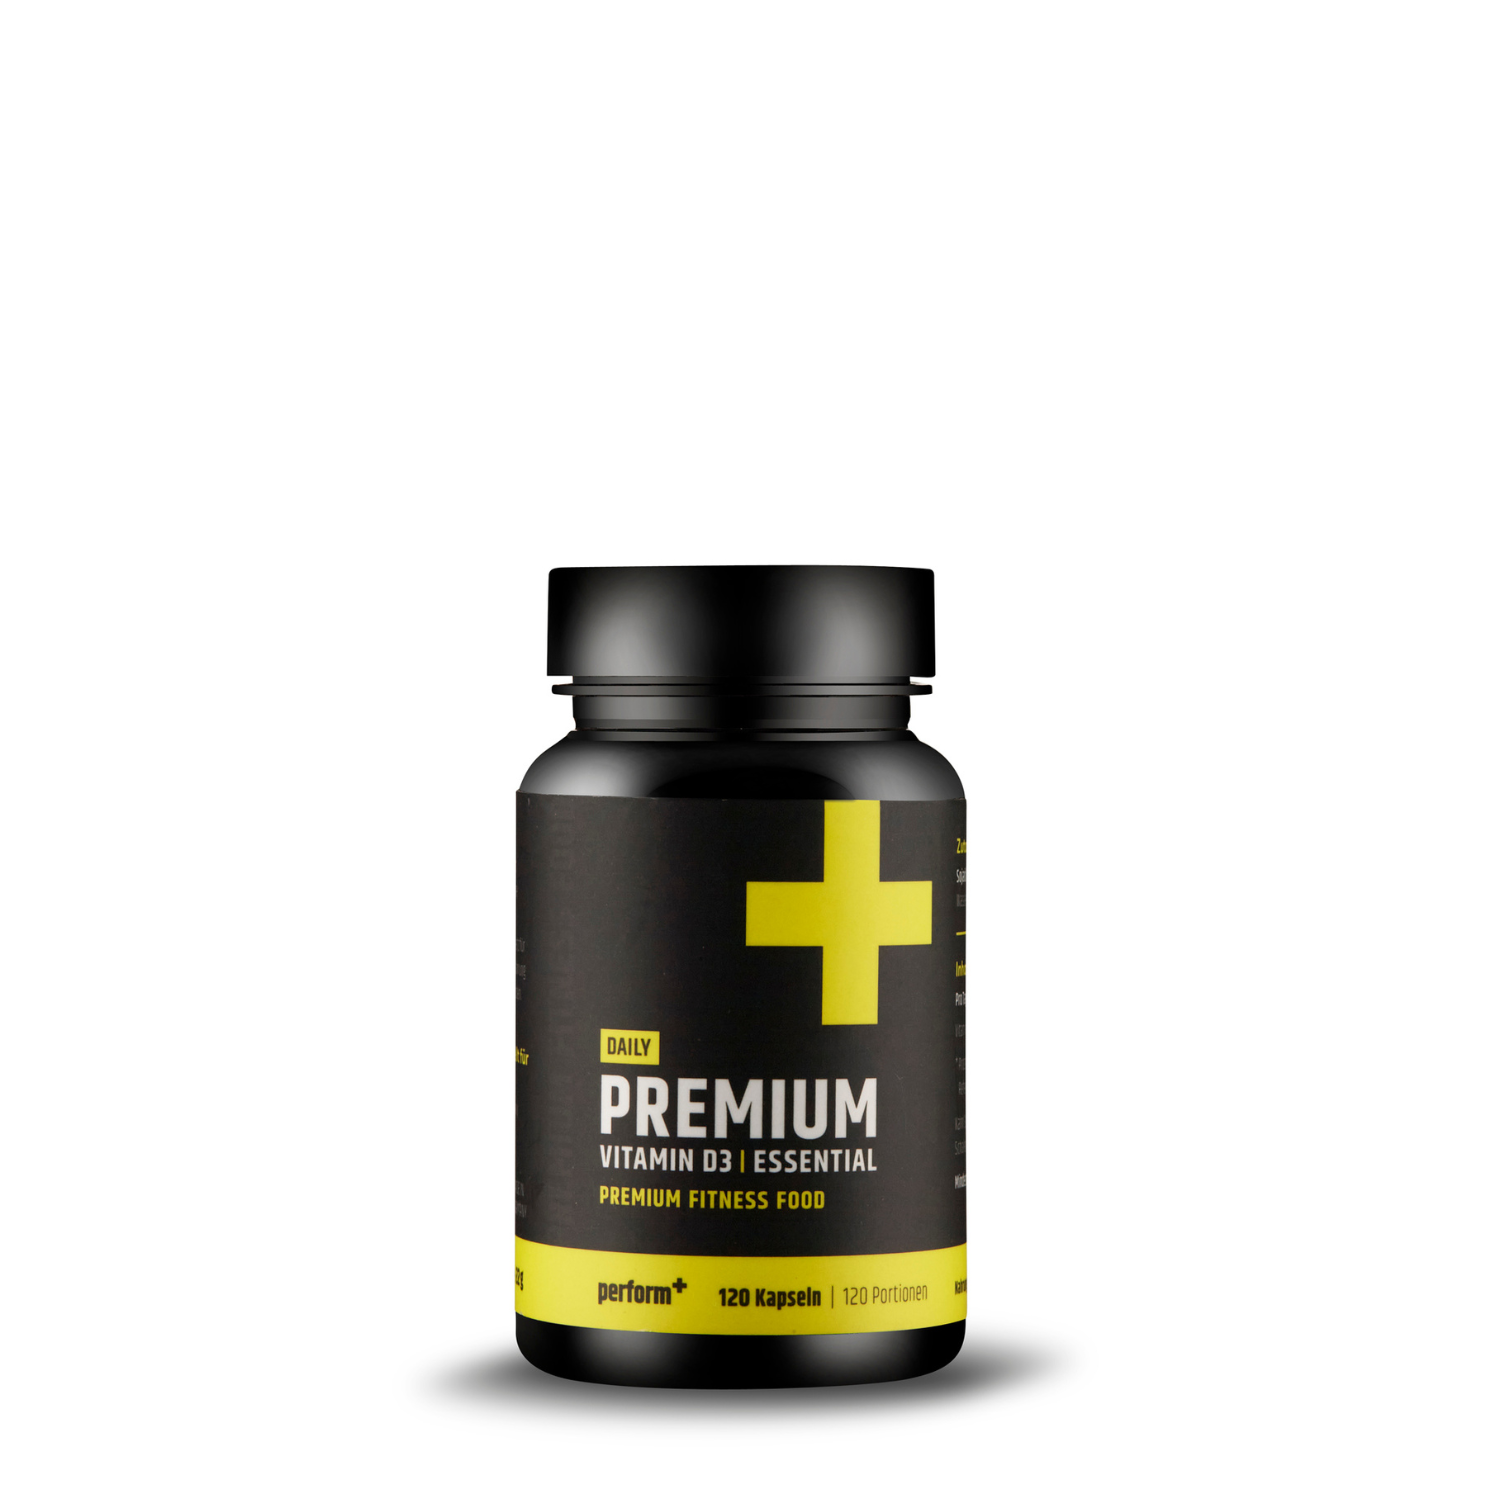 Premium Vitamin D3 | Essential